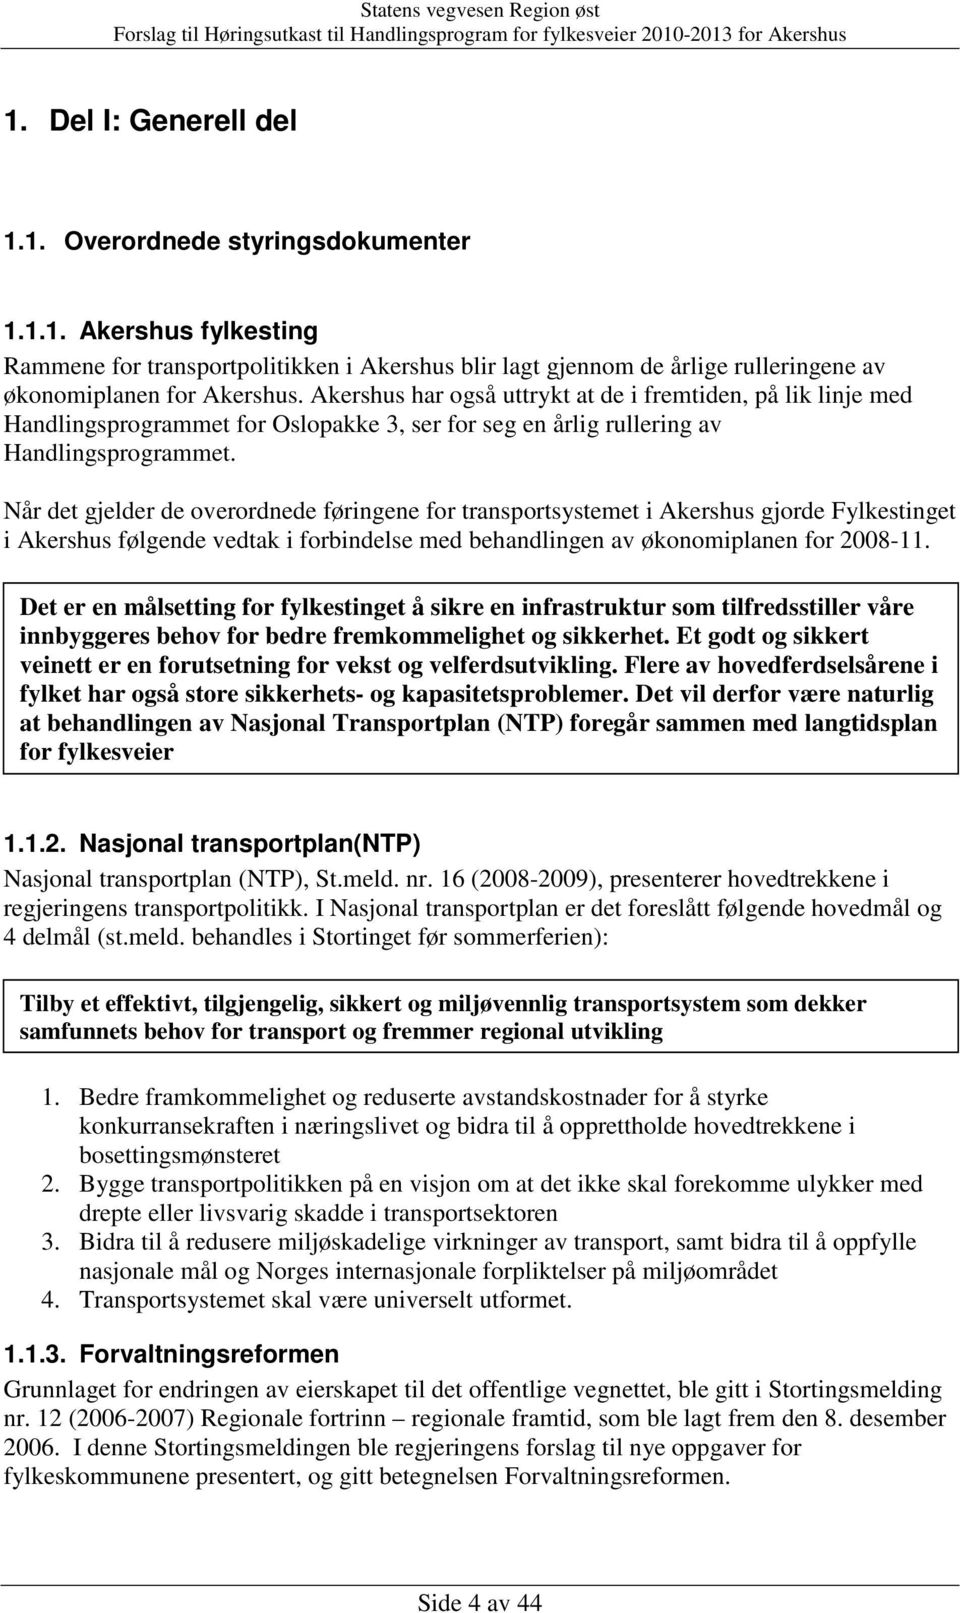 Når det gjelder de overordnede føringene for transportsystemet i Akershus gjorde Fylkestinget i Akershus følgende vedtak i forbindelse med behandlingen av økonomiplanen for 2008-11.